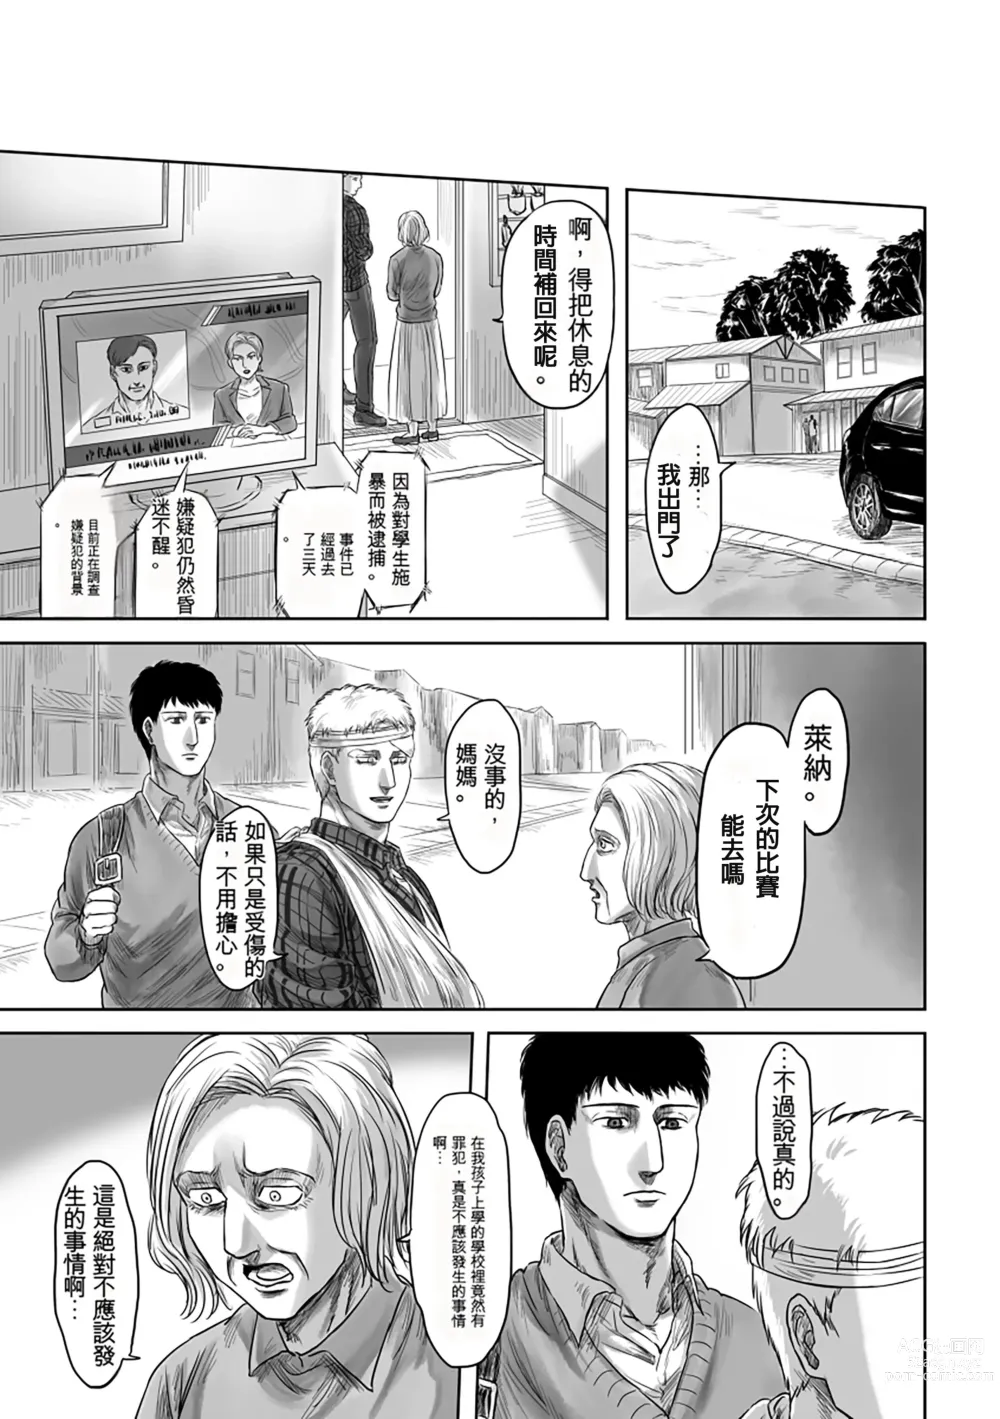 Page 55 of doujinshi GAZE